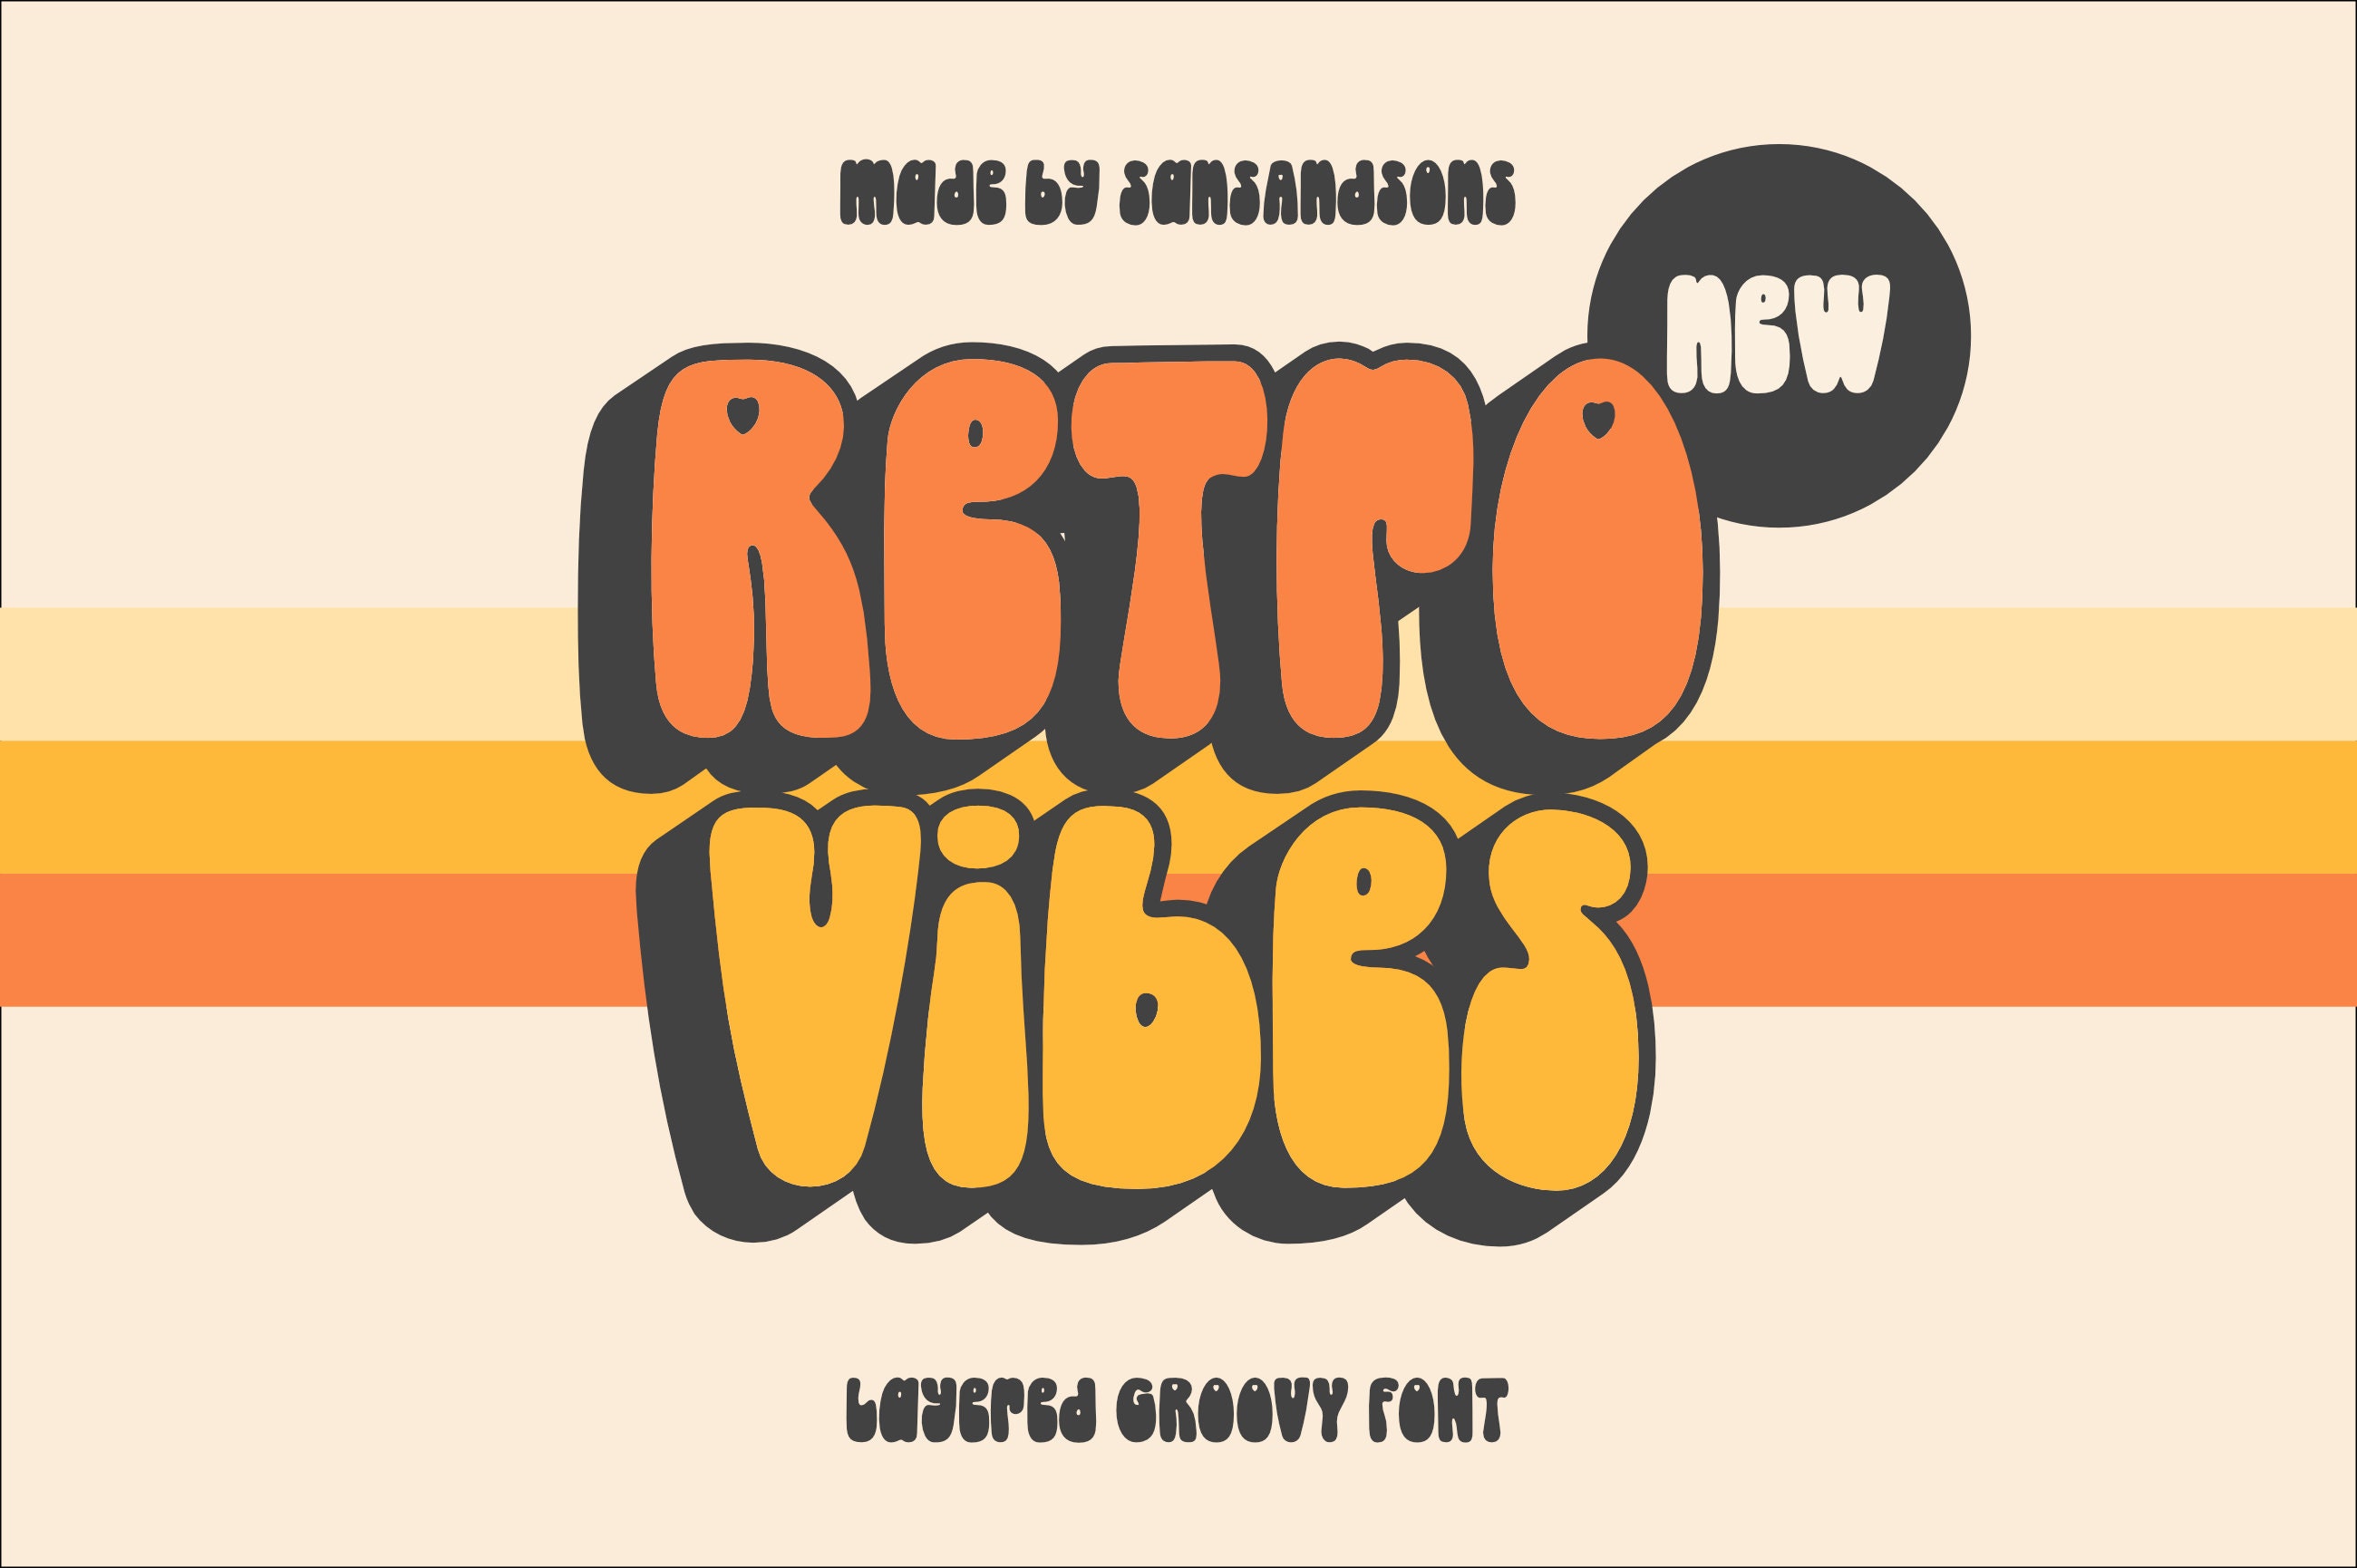 Retro Vibes Groovy Font - Sự kết hợp giữa cái nhìn về thập niên 70 và phong cách funky đầy màu sắc, Retro Vibes Groovy Font sẽ mang đến cho dự án của bạn một cái nhìn hợp thời trang và thú vị. Với các chi tiết tinh tế và đầy màu sắc, Retro Vibes Groovy Font thể hiện một phong cách đặc trưng thập niên bảy nhưng lại đem lại một cái nhìn mới mẻ cho trang trí, thương hiệu, hoặc các dự án nghệ thuật.